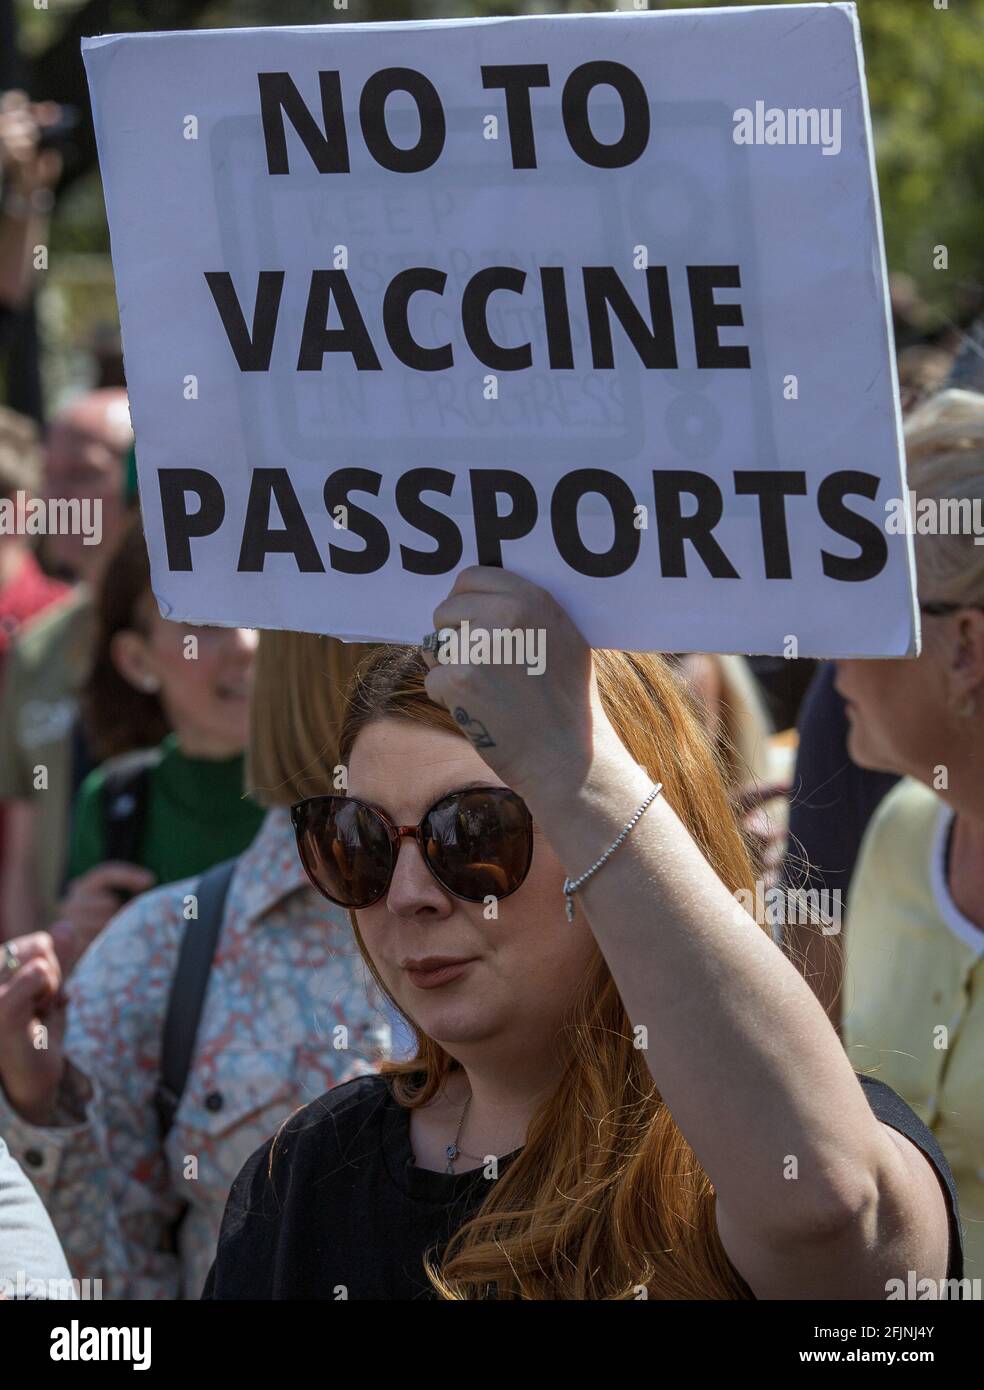 24 avril 2021, Londres, Angleterre, Royaume-Uni : une femme porte le signe « non aux passeports de vaccination » lors d'une manifestation anti-verrouillage « Unite for Freedom » Banque D'Images